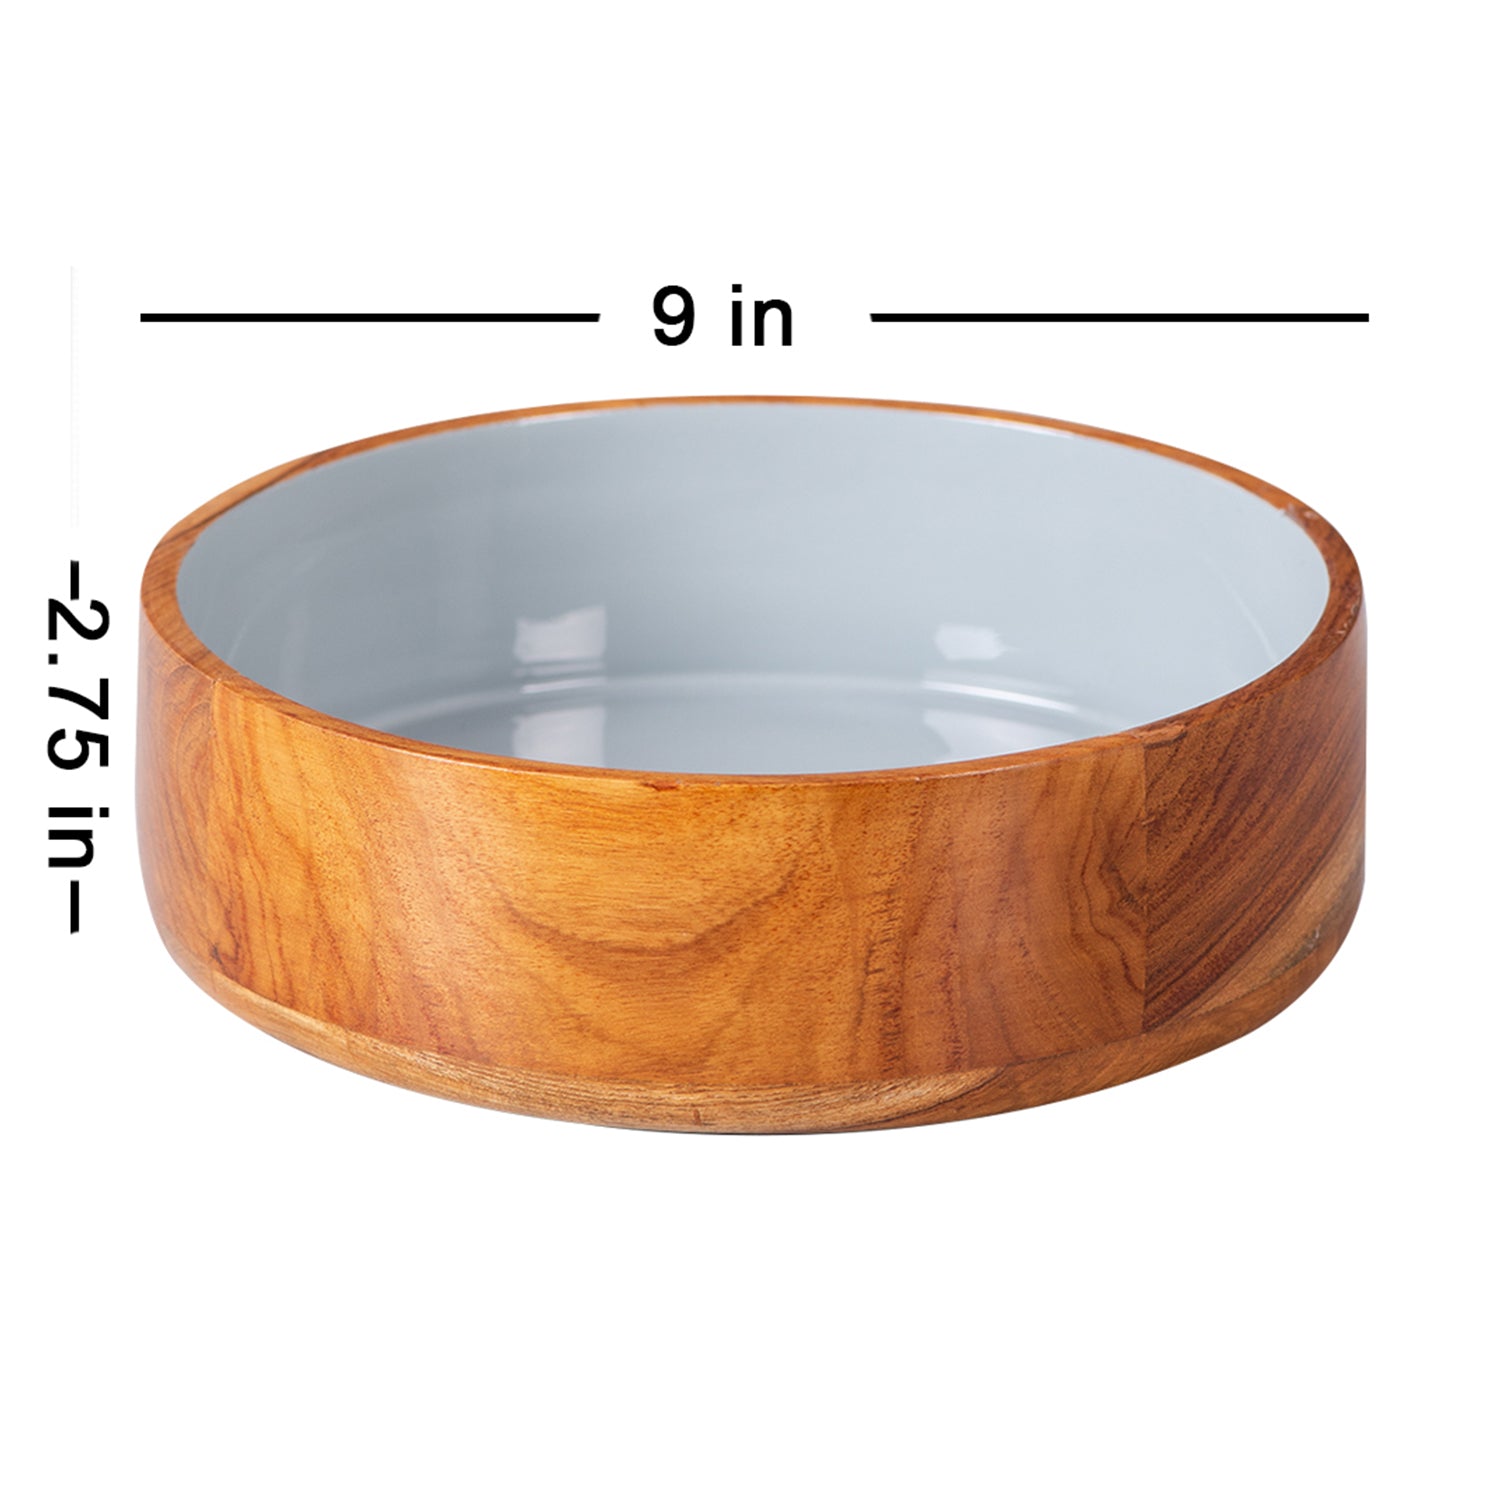 wooden teak wood serving bowl